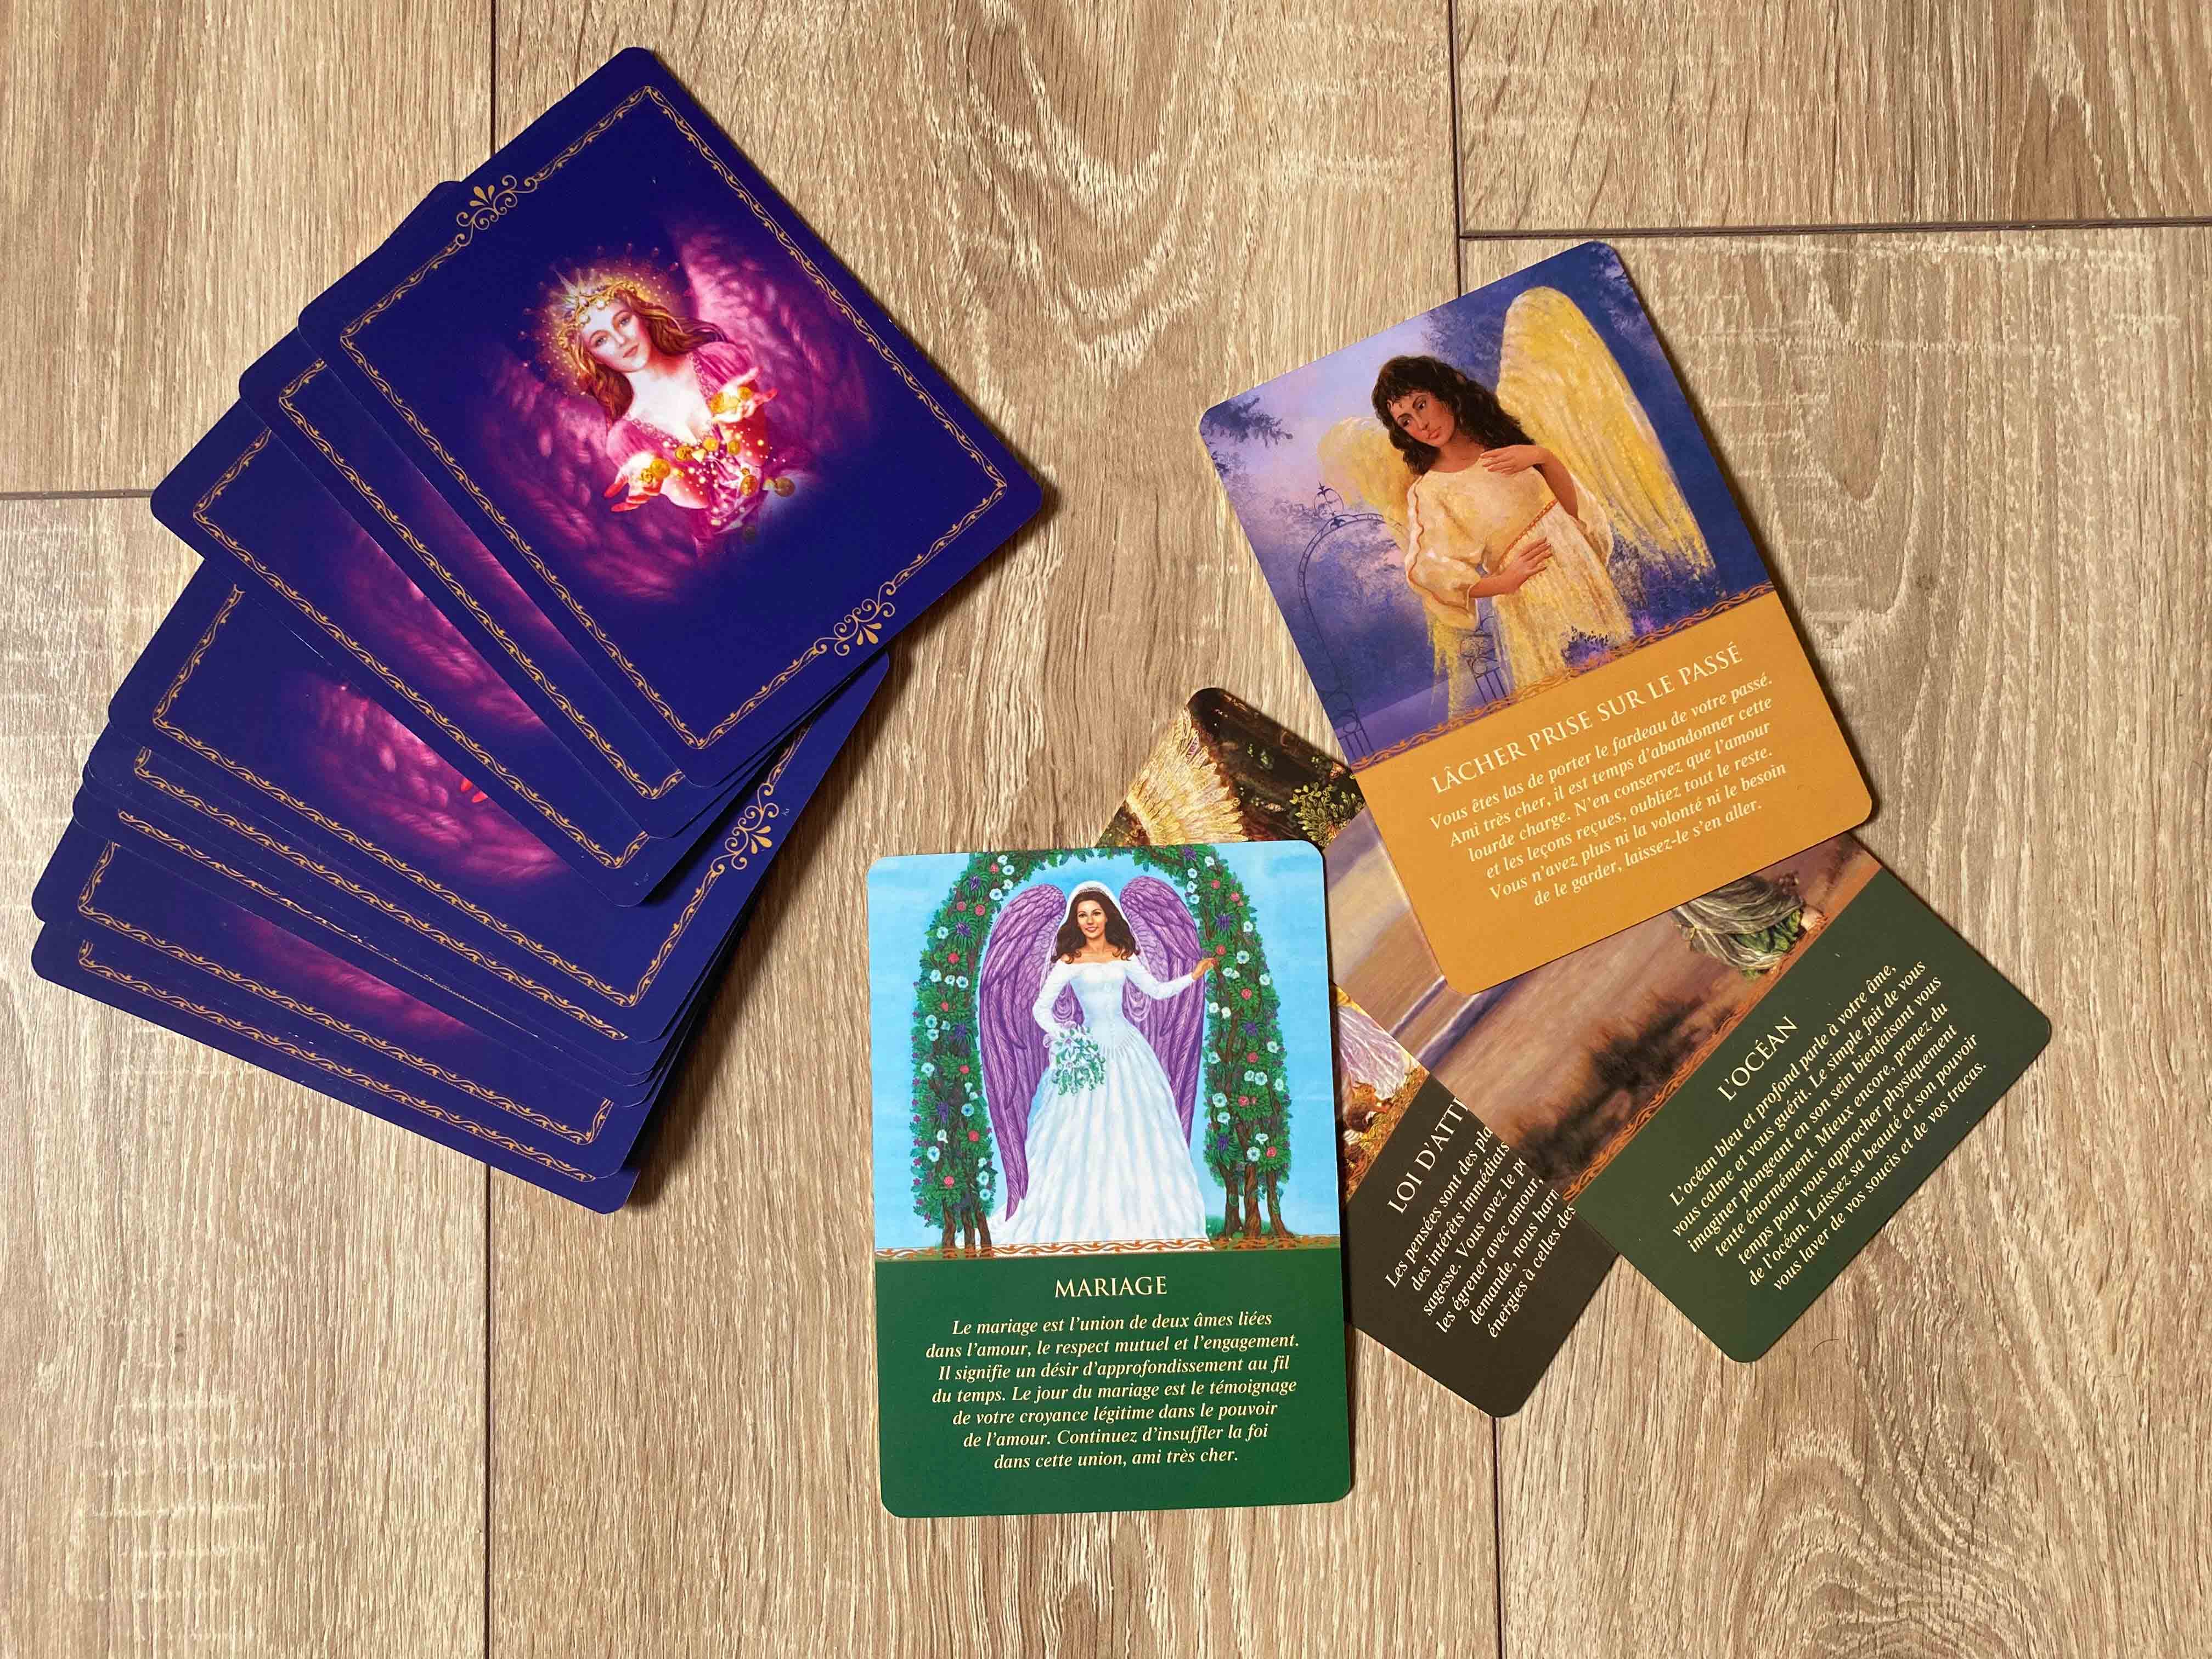 Oracle des anges : significations des cartes divinatoires - Femme Actuelle